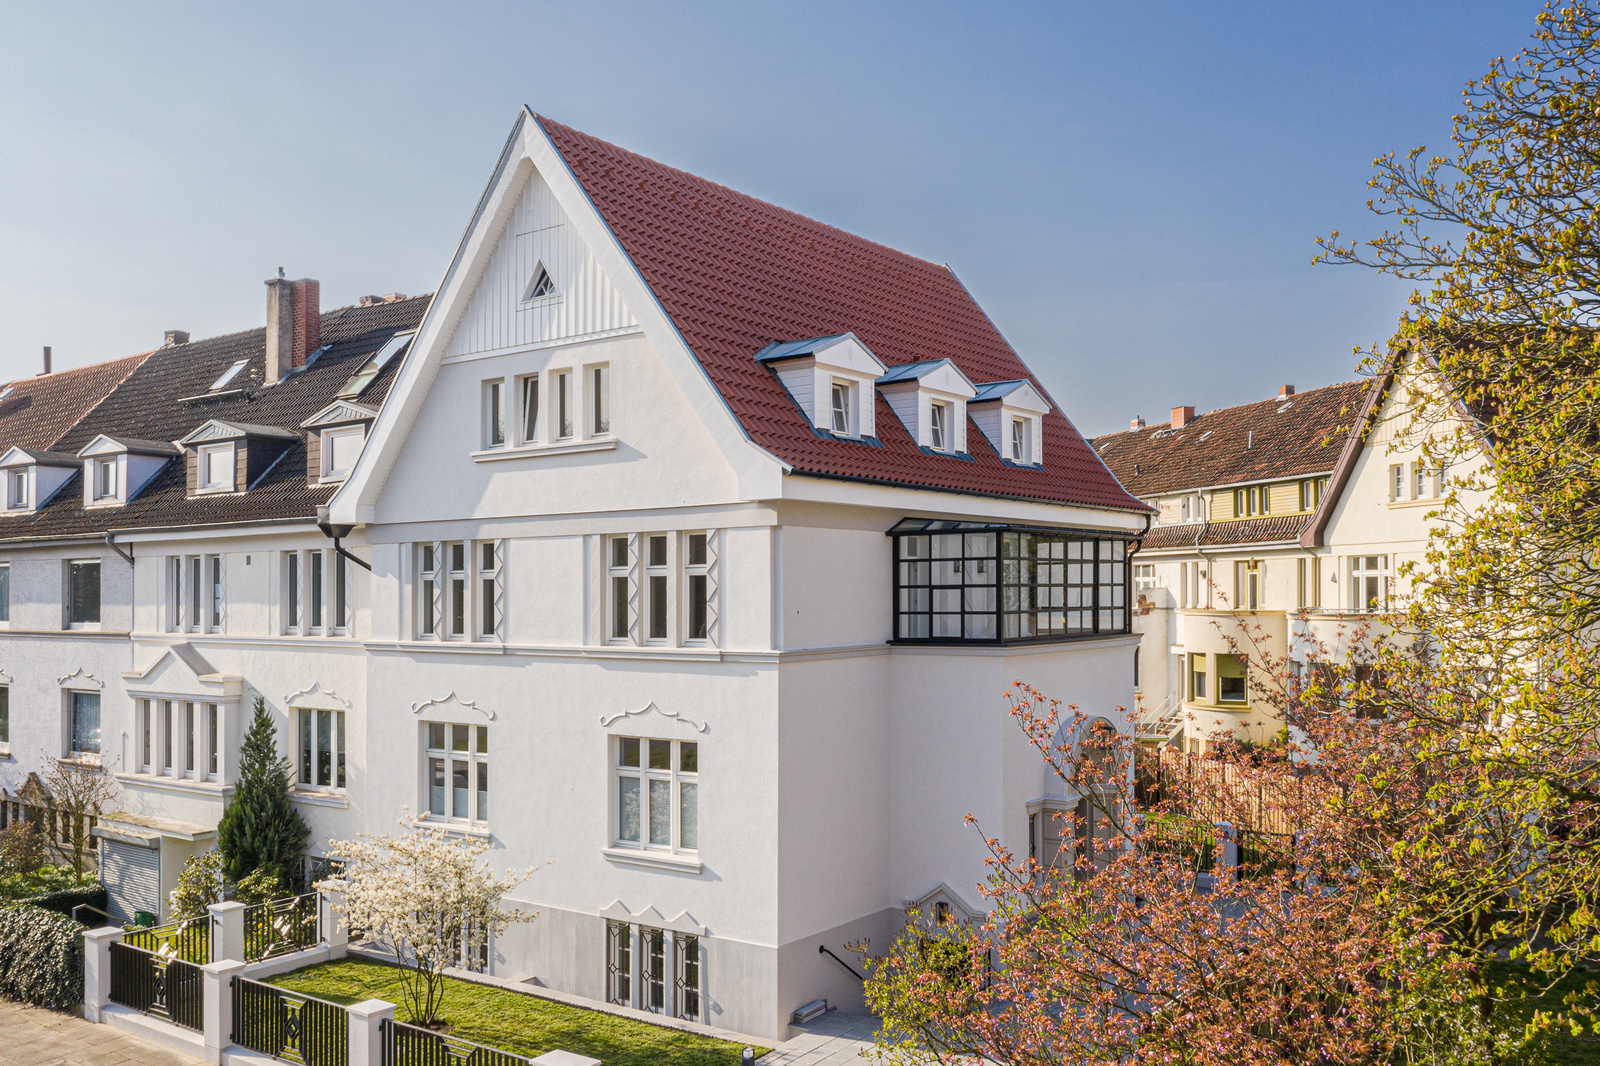 Kernsanierte Altbauwohnung mit herausragender Ausstattung Wintergarten, EBK, Balkon etc.